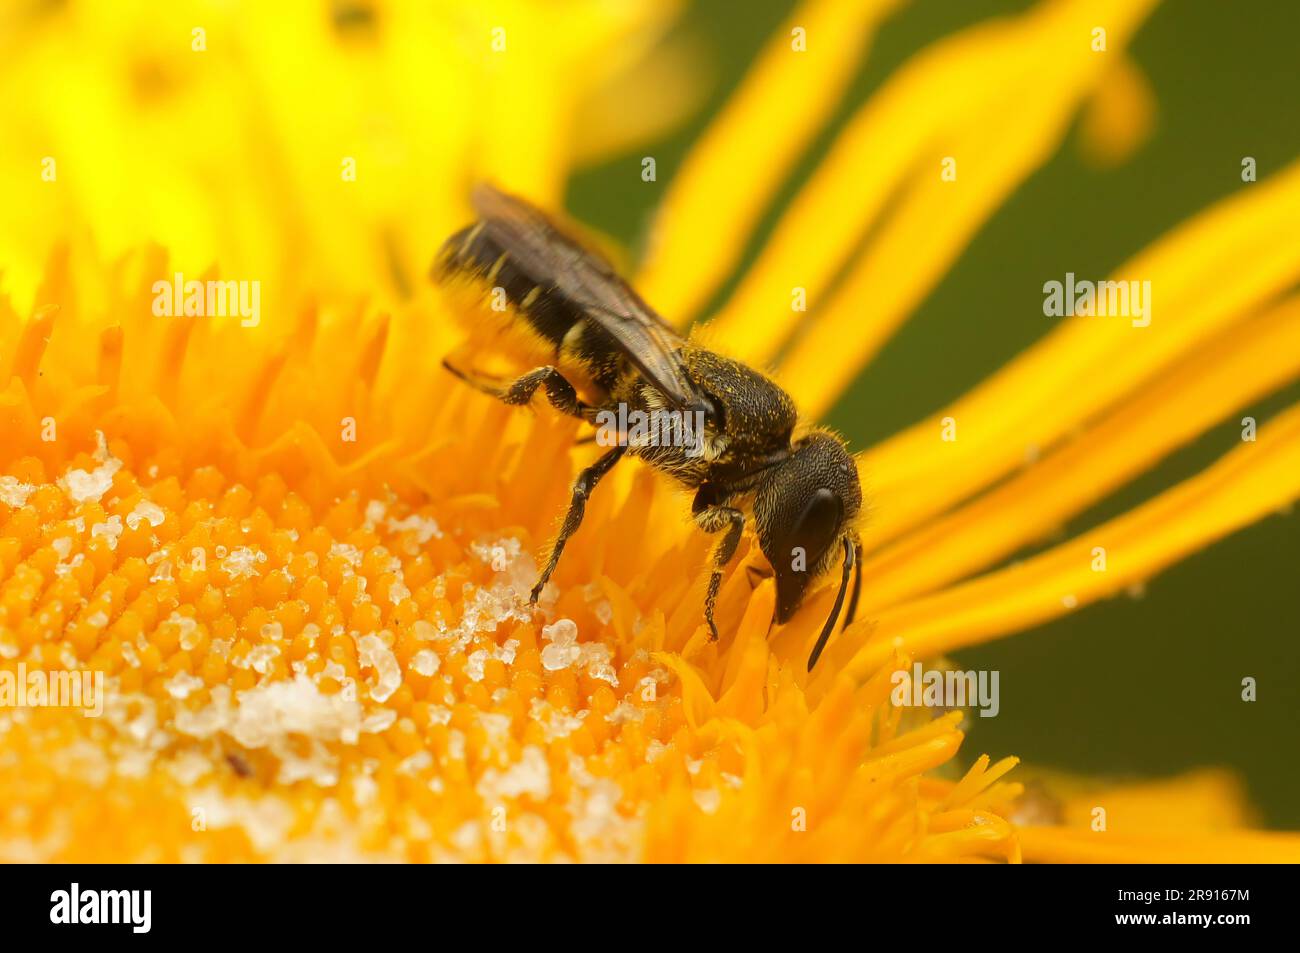 Natürliche Nahaufnahme einer kleinen weiblichen, großköpfigen, gepanzerten Biene, Heriades truncorum, auf einer gelben Alant, Inula officinalis, Blume im Garten Stockfoto